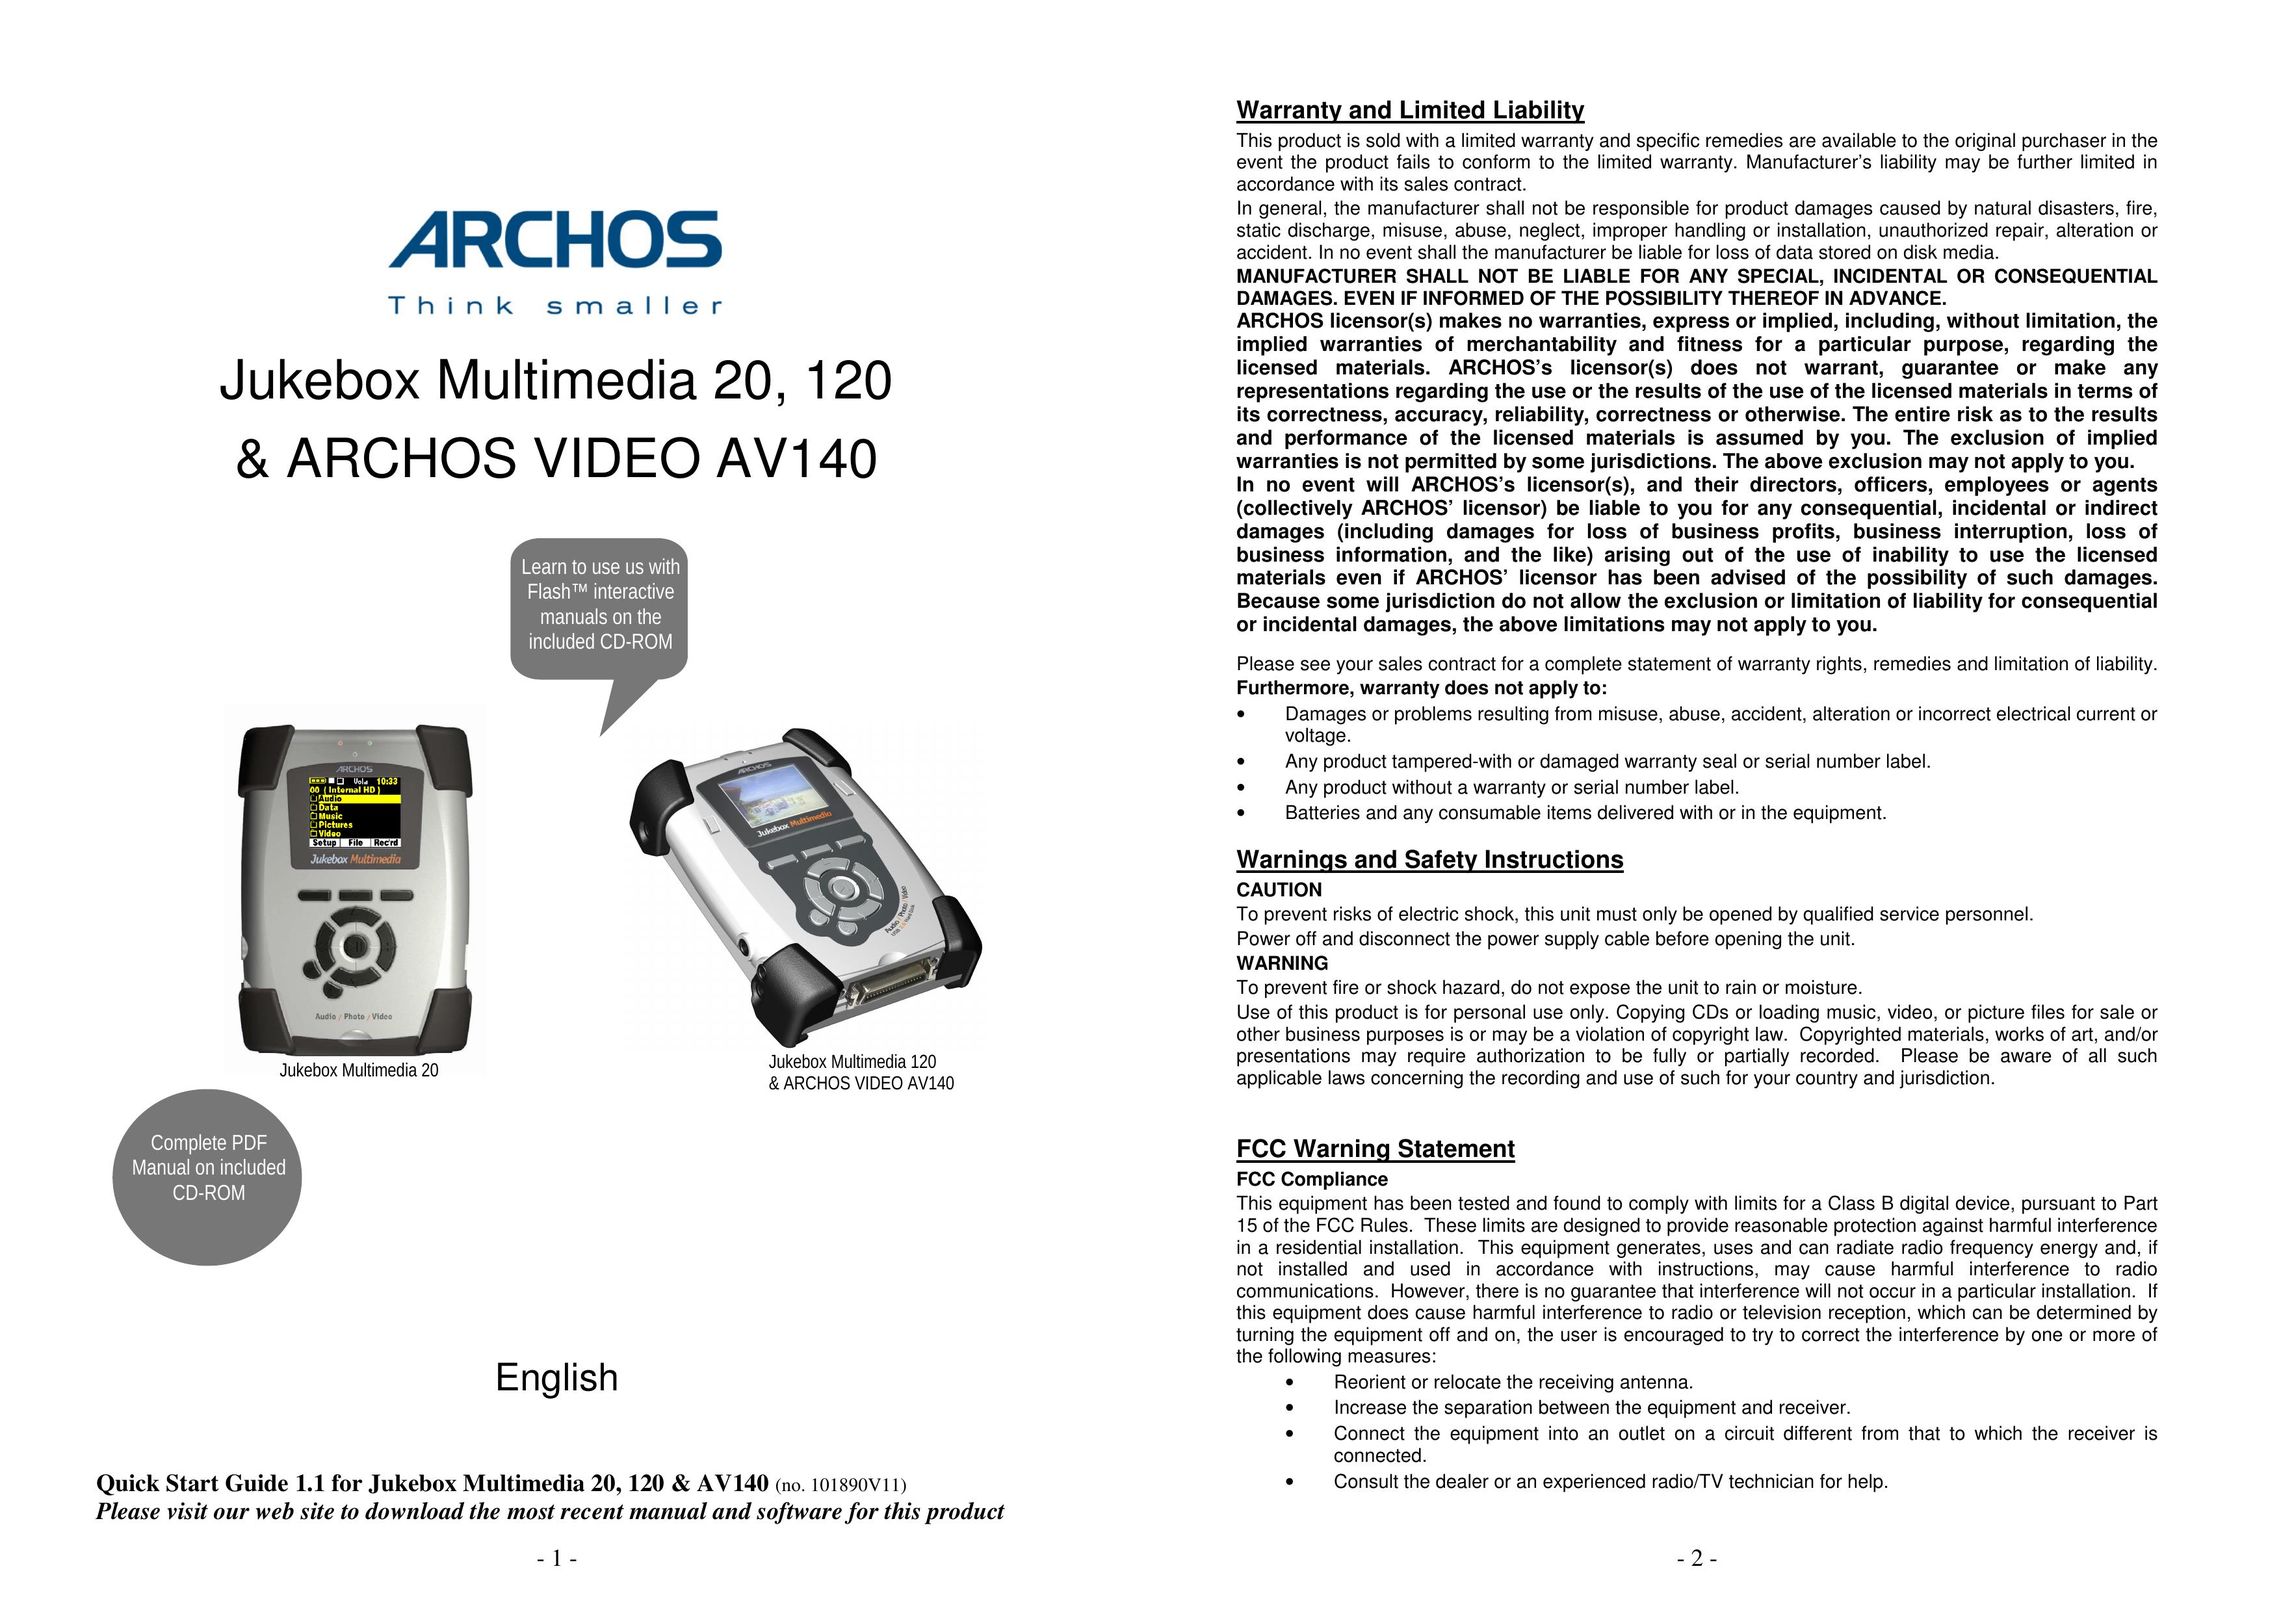 Archos AV140 Portable Multimedia Player User Manual